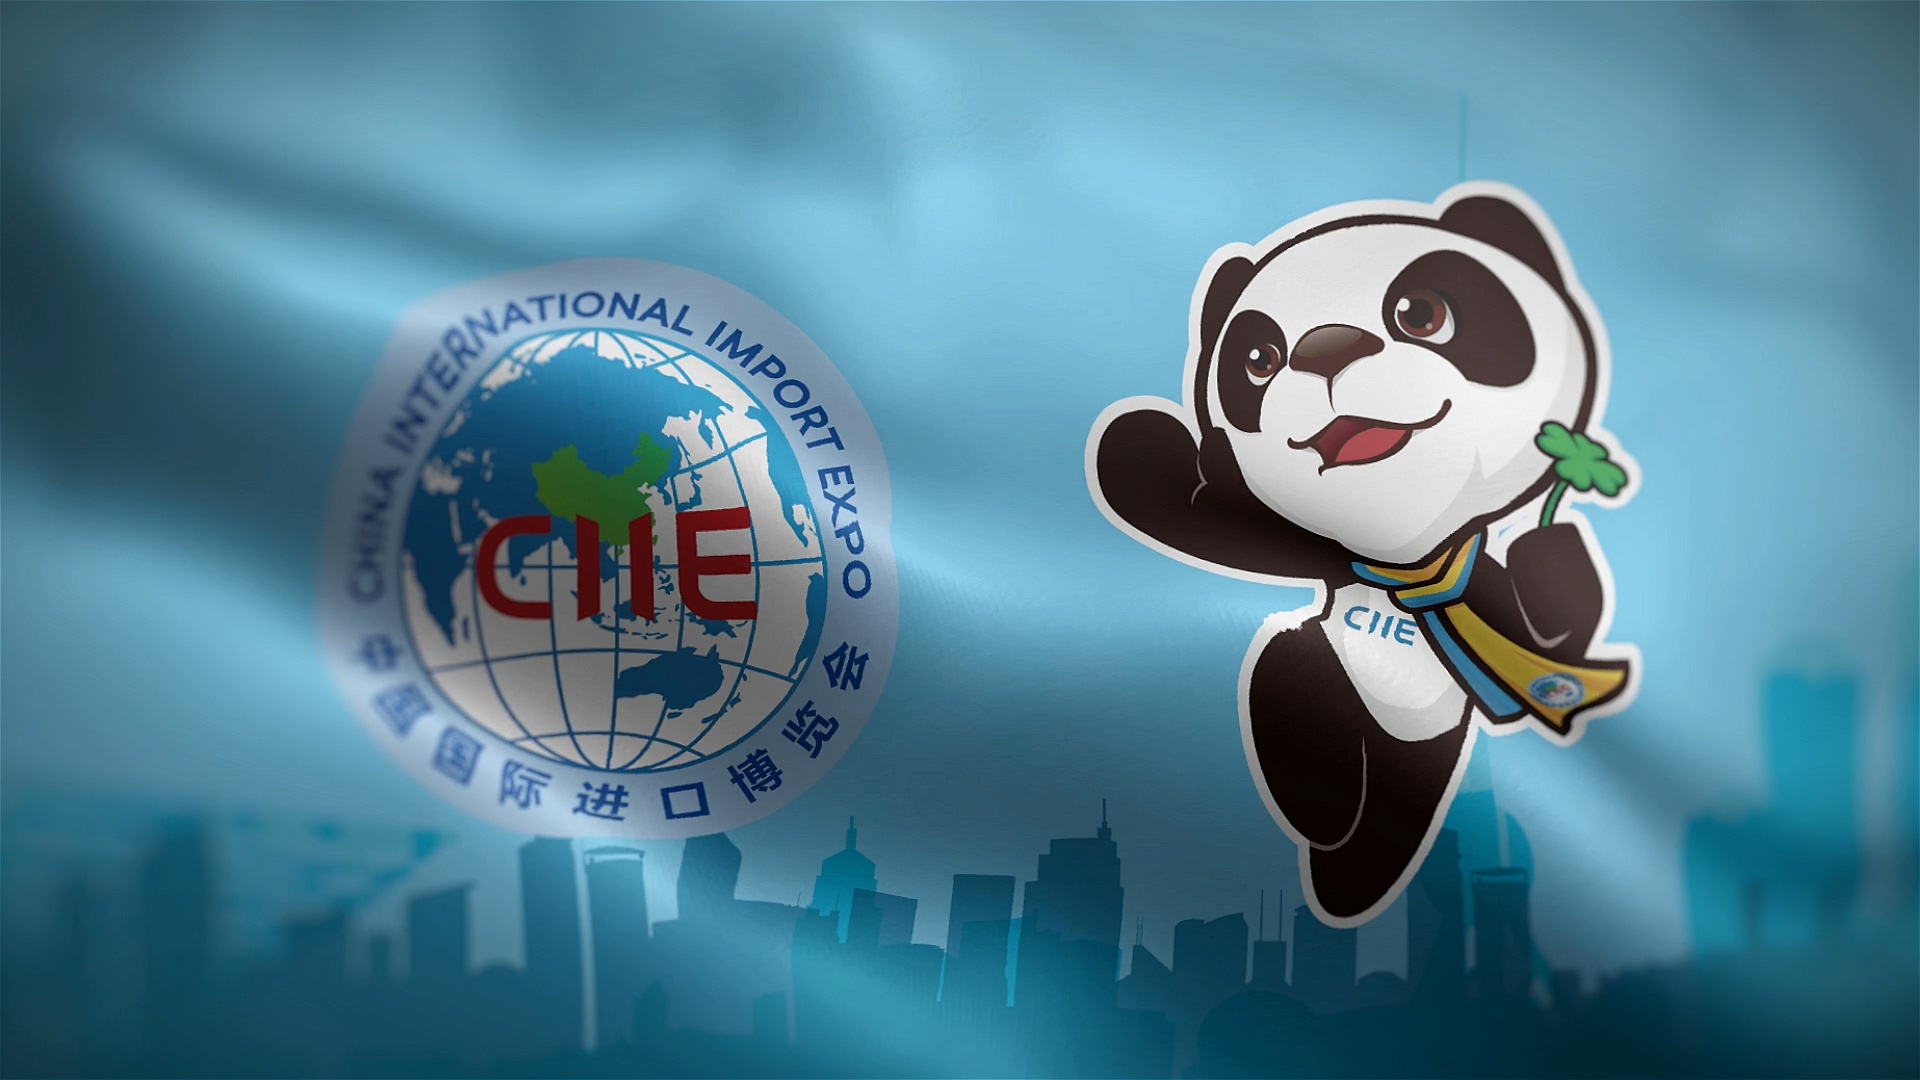 上海进博会LOGO和吉祥物旗帜动态视频素材